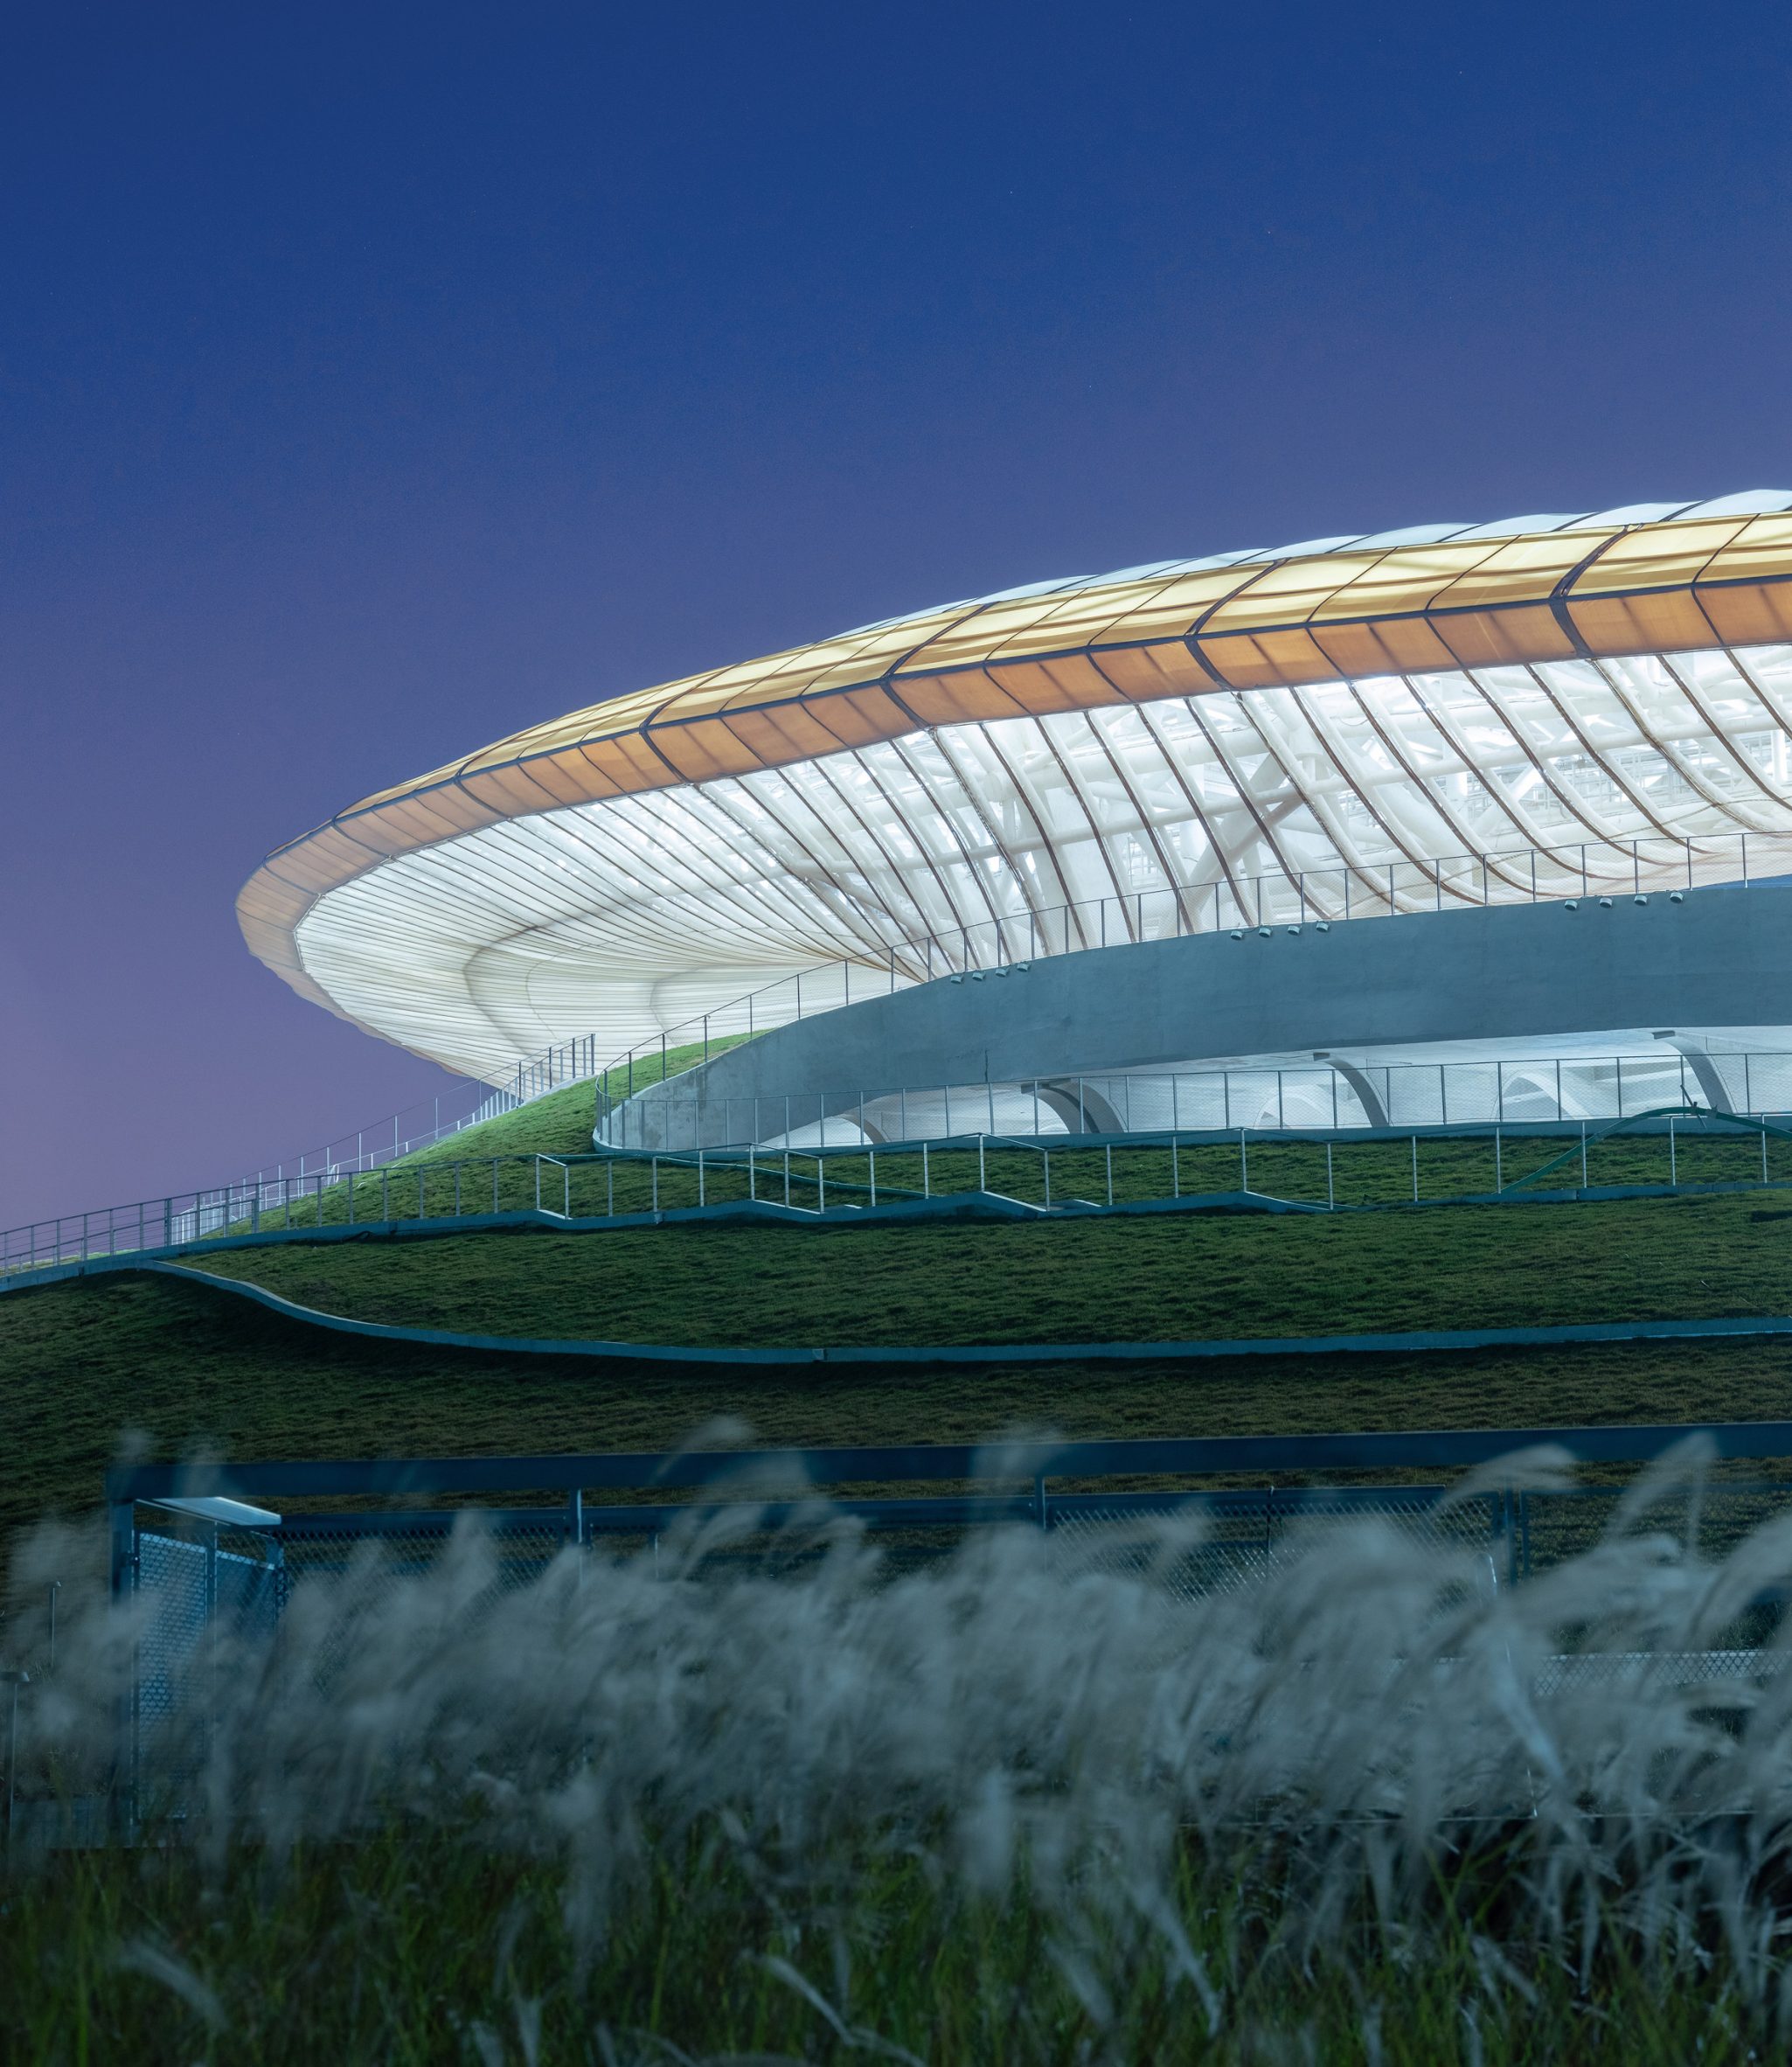 Exterior view of Quzhou Stadium